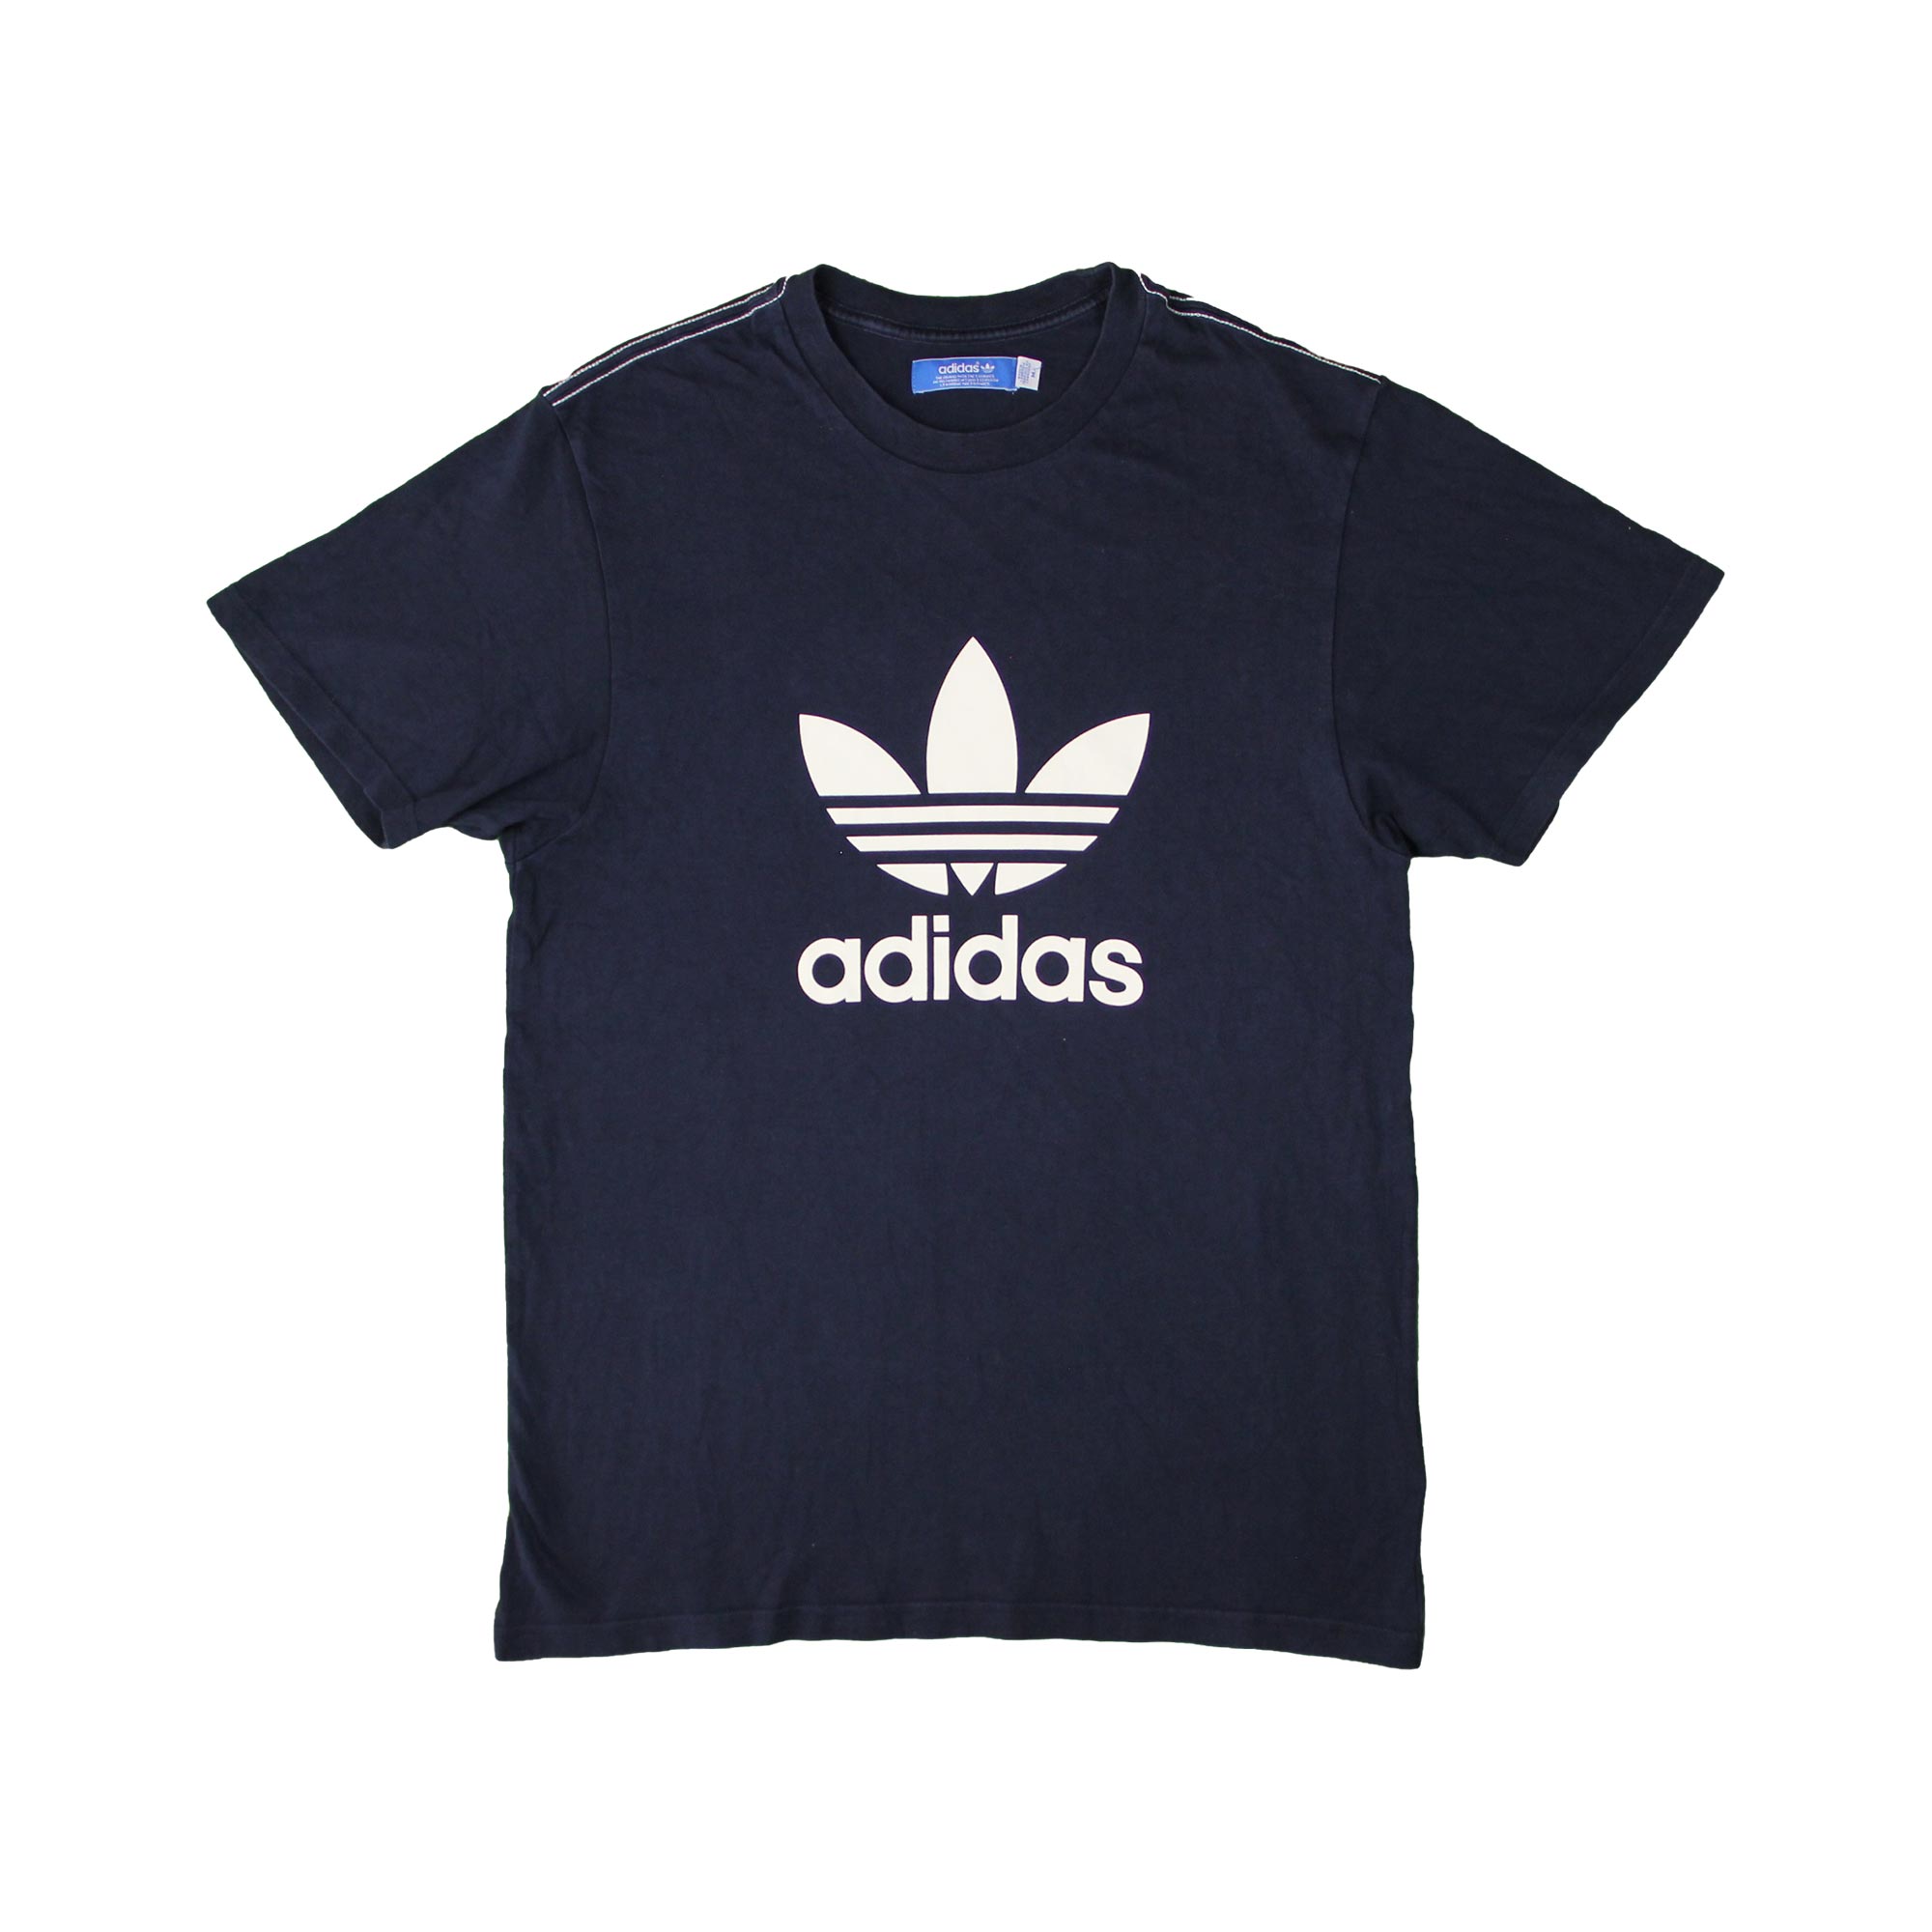 Adidas Vintage T-Shirt - M